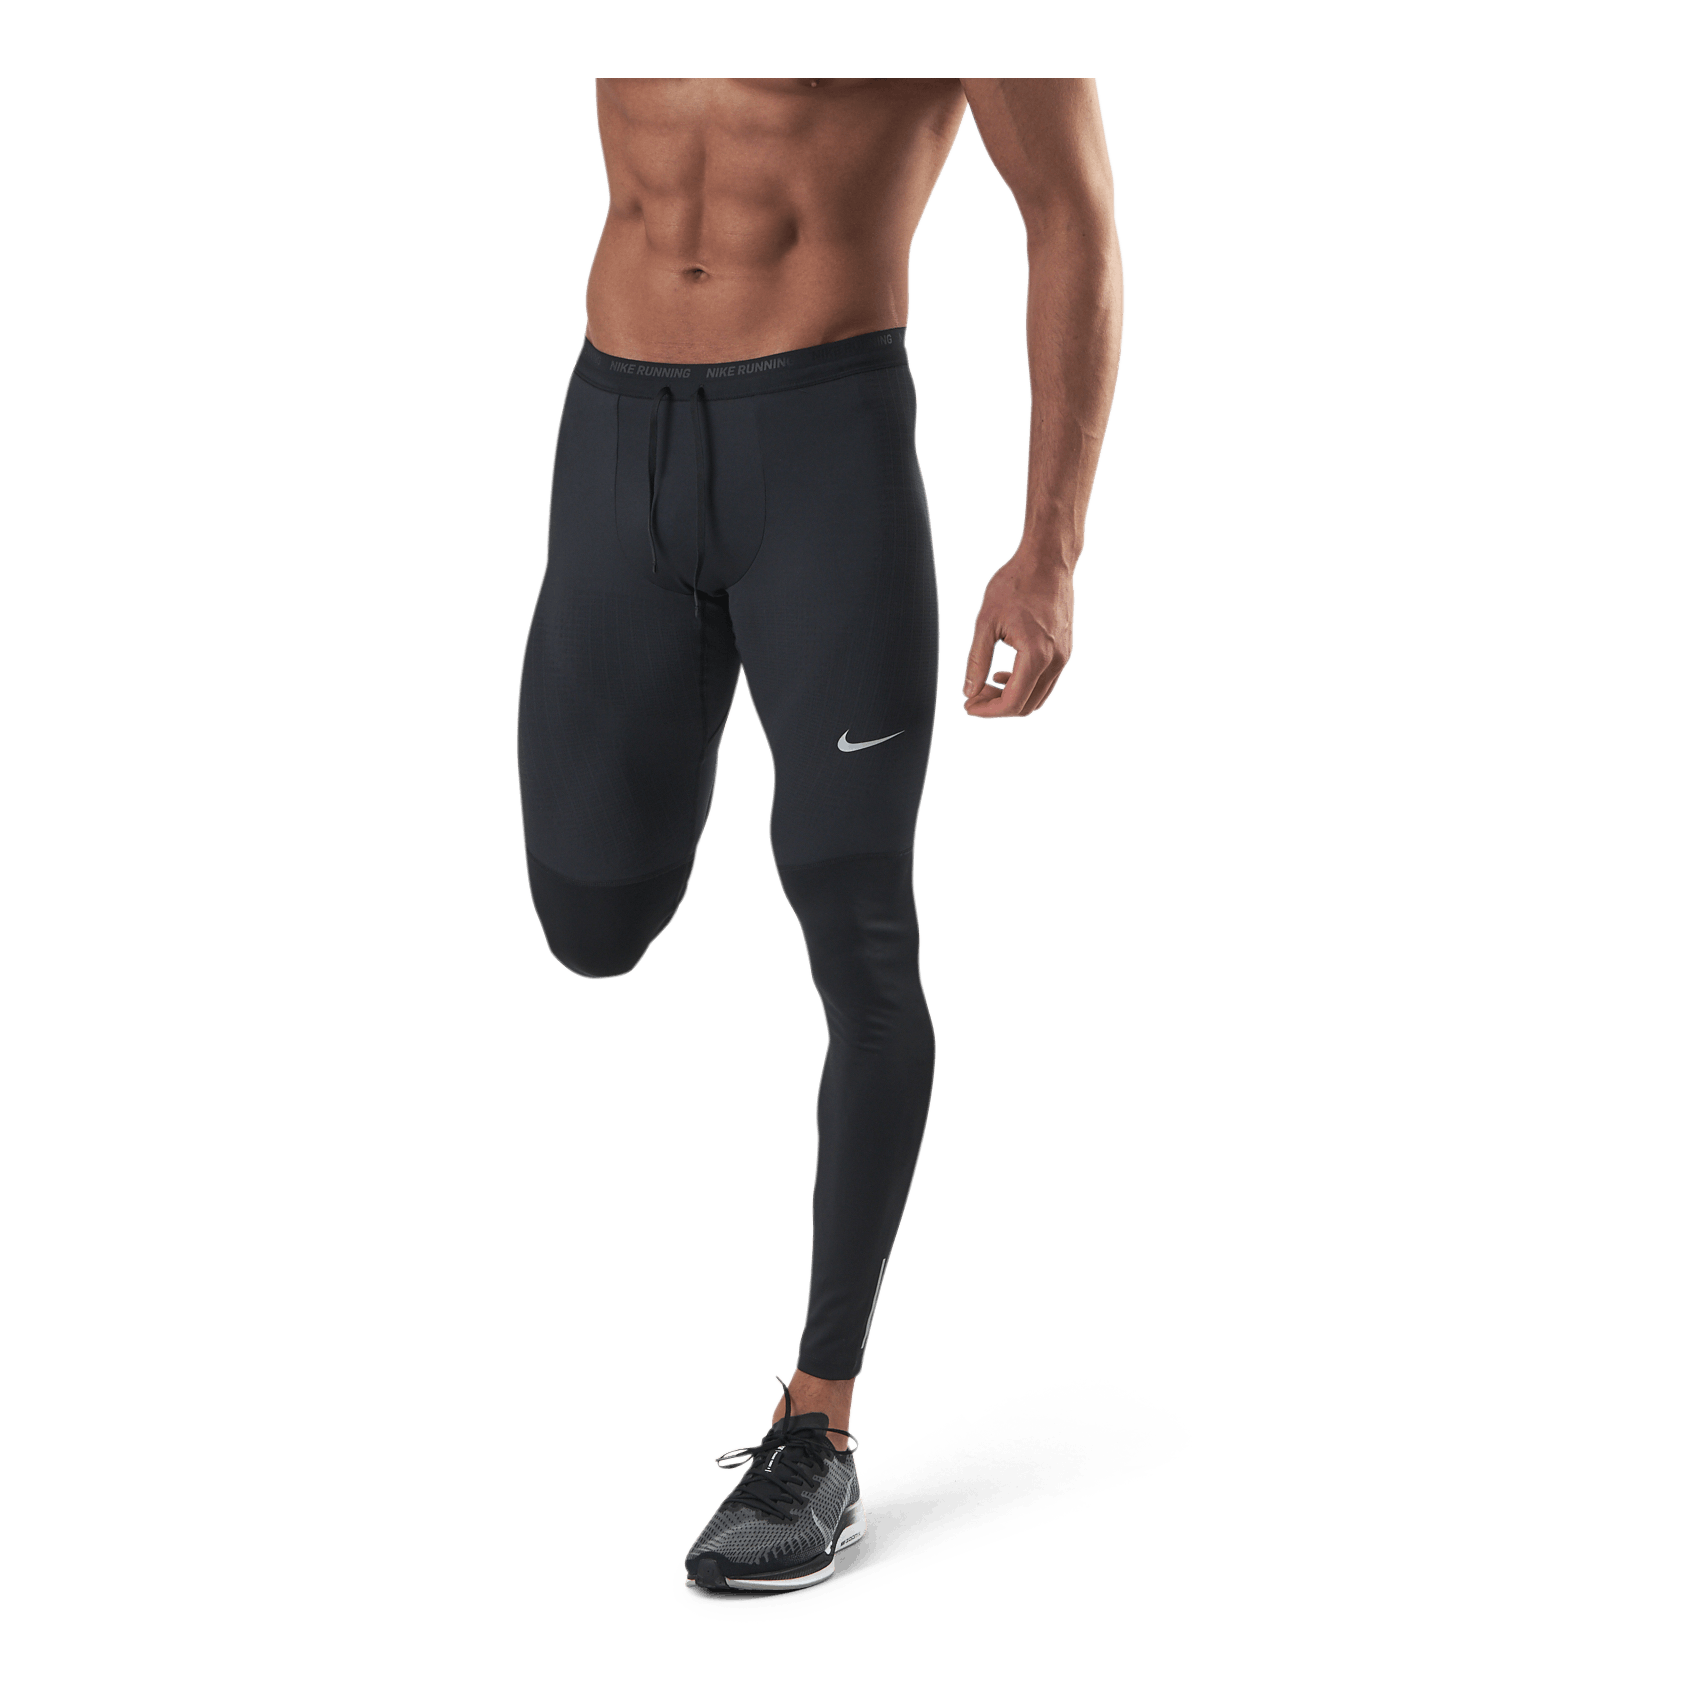 Phenom Elite Men's Running Tights BLACK/REFLECTIVE SILV - Nike –